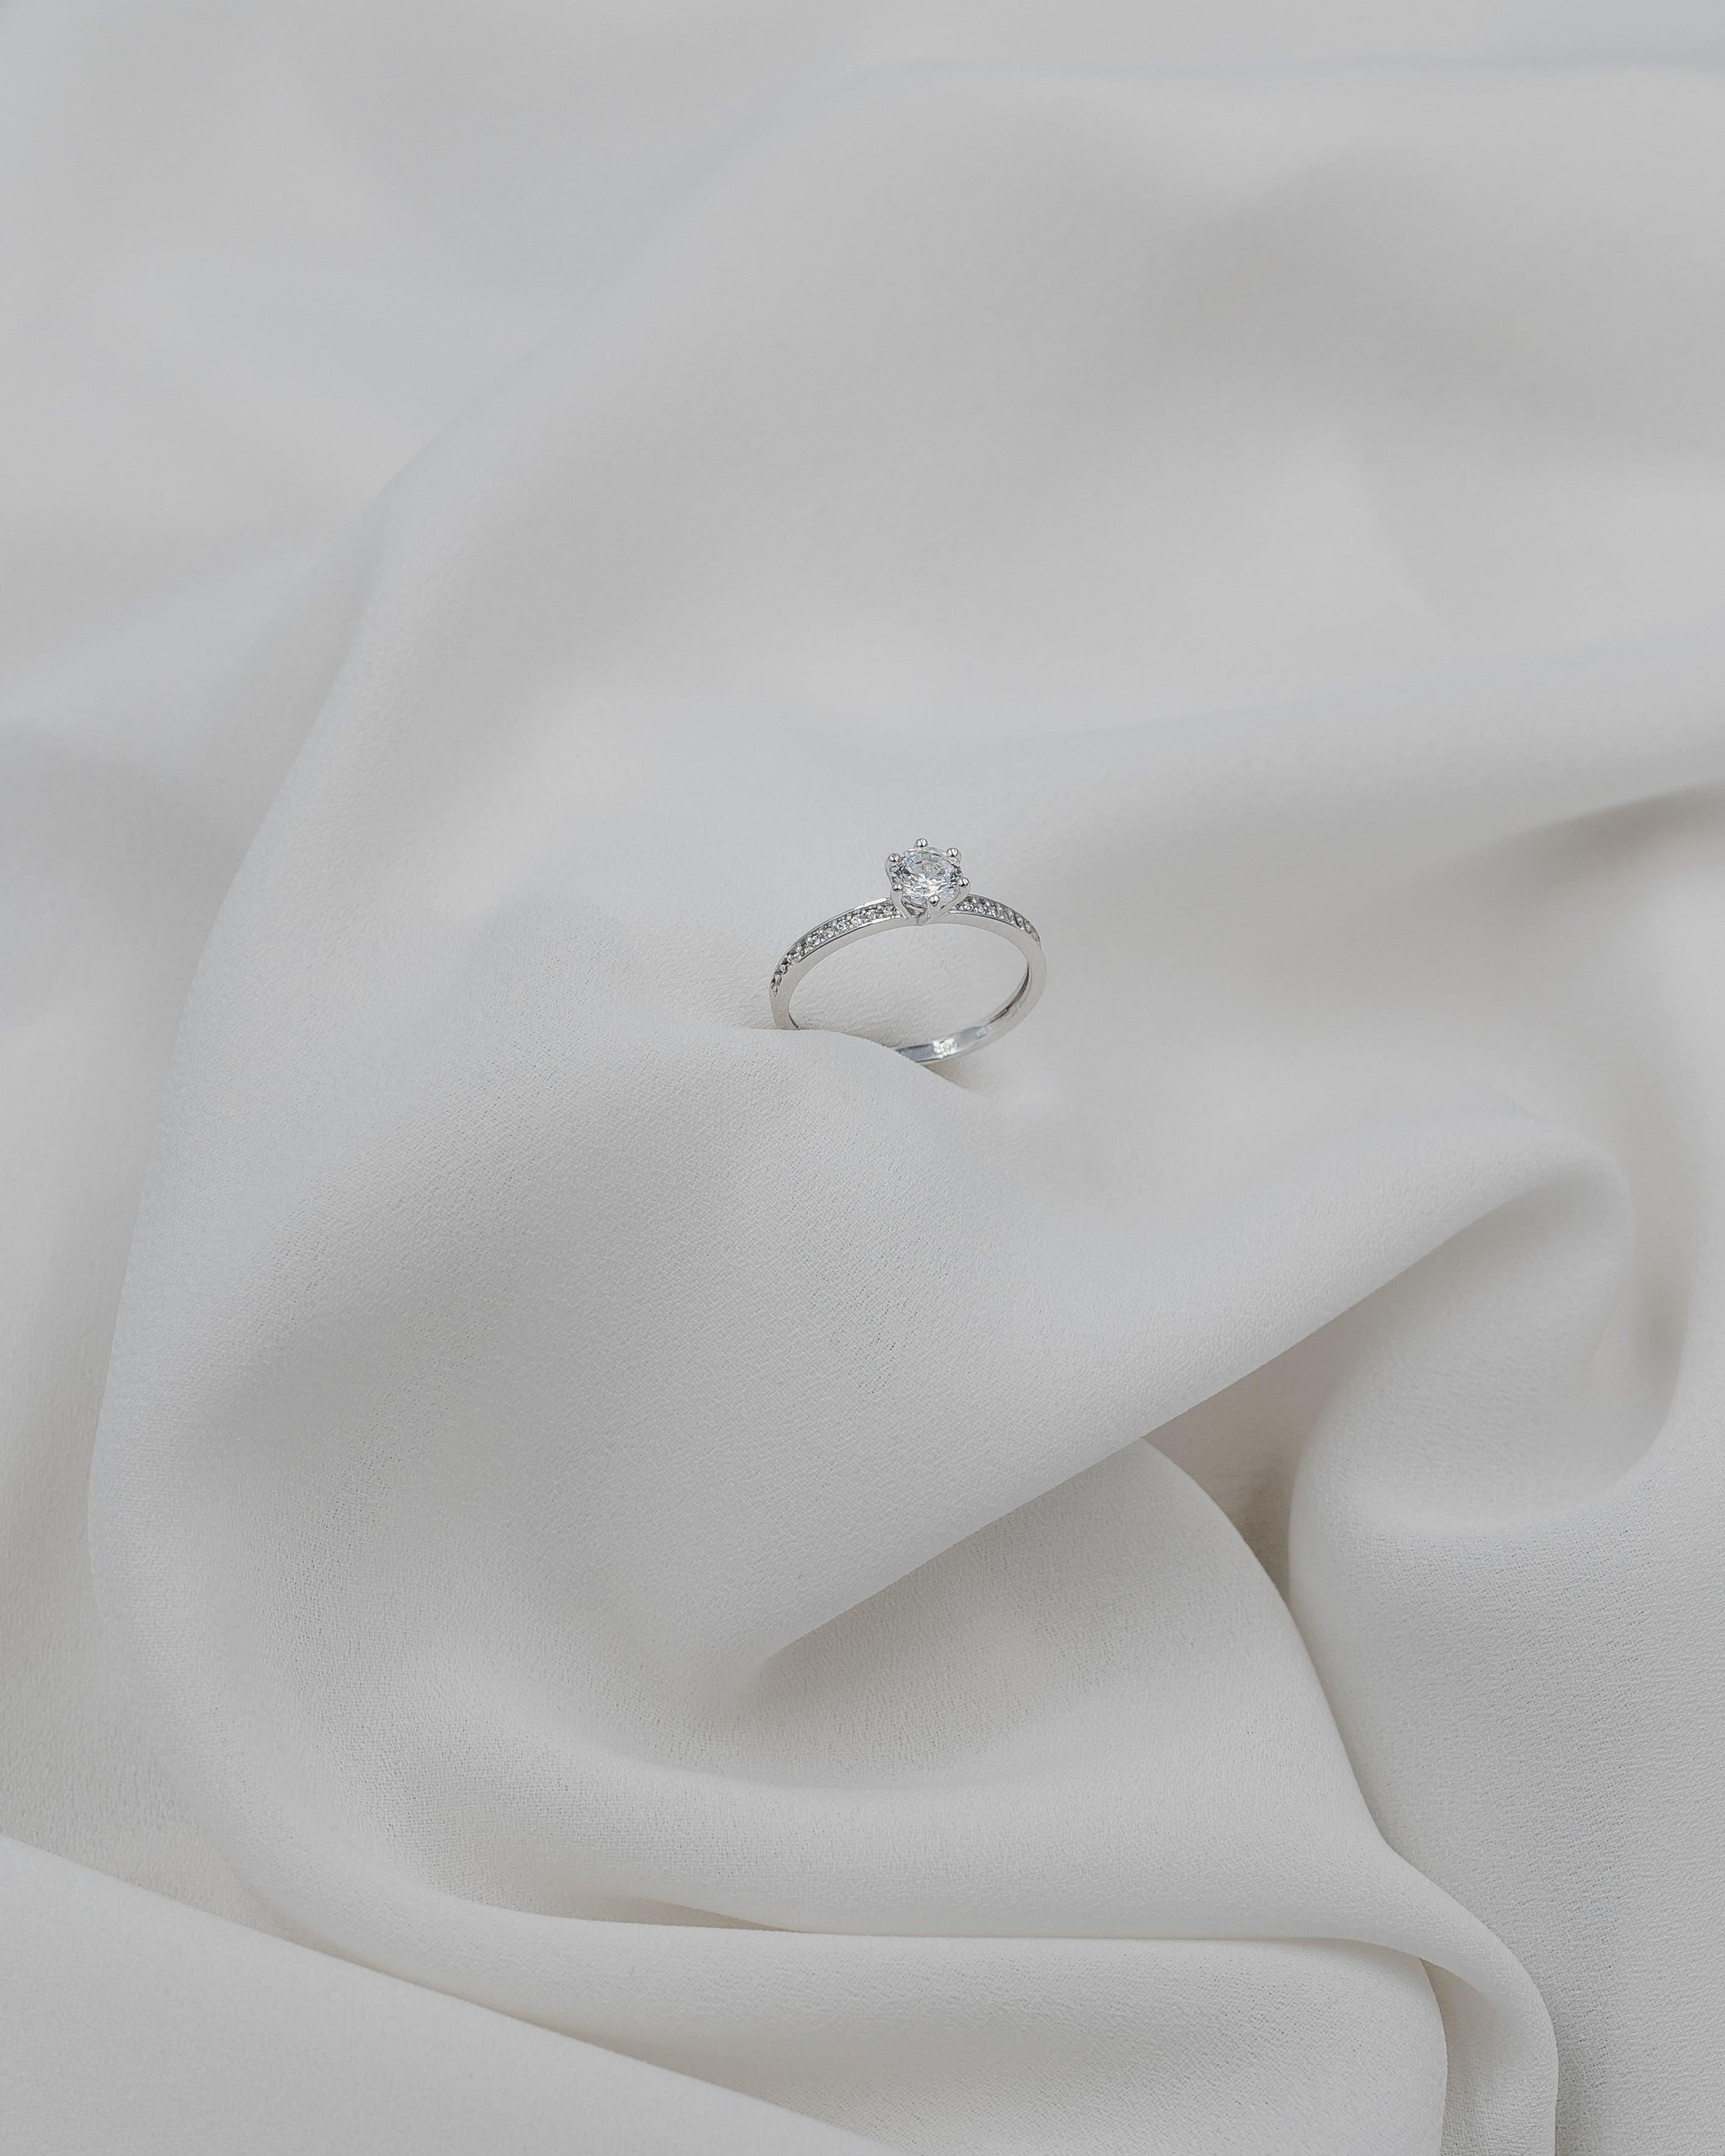 Λευκόχρυσο μονόπετρο με διαμάντι, διακοσμημένο με πλαϊνές πέτρες σε λευκό πέπλο.